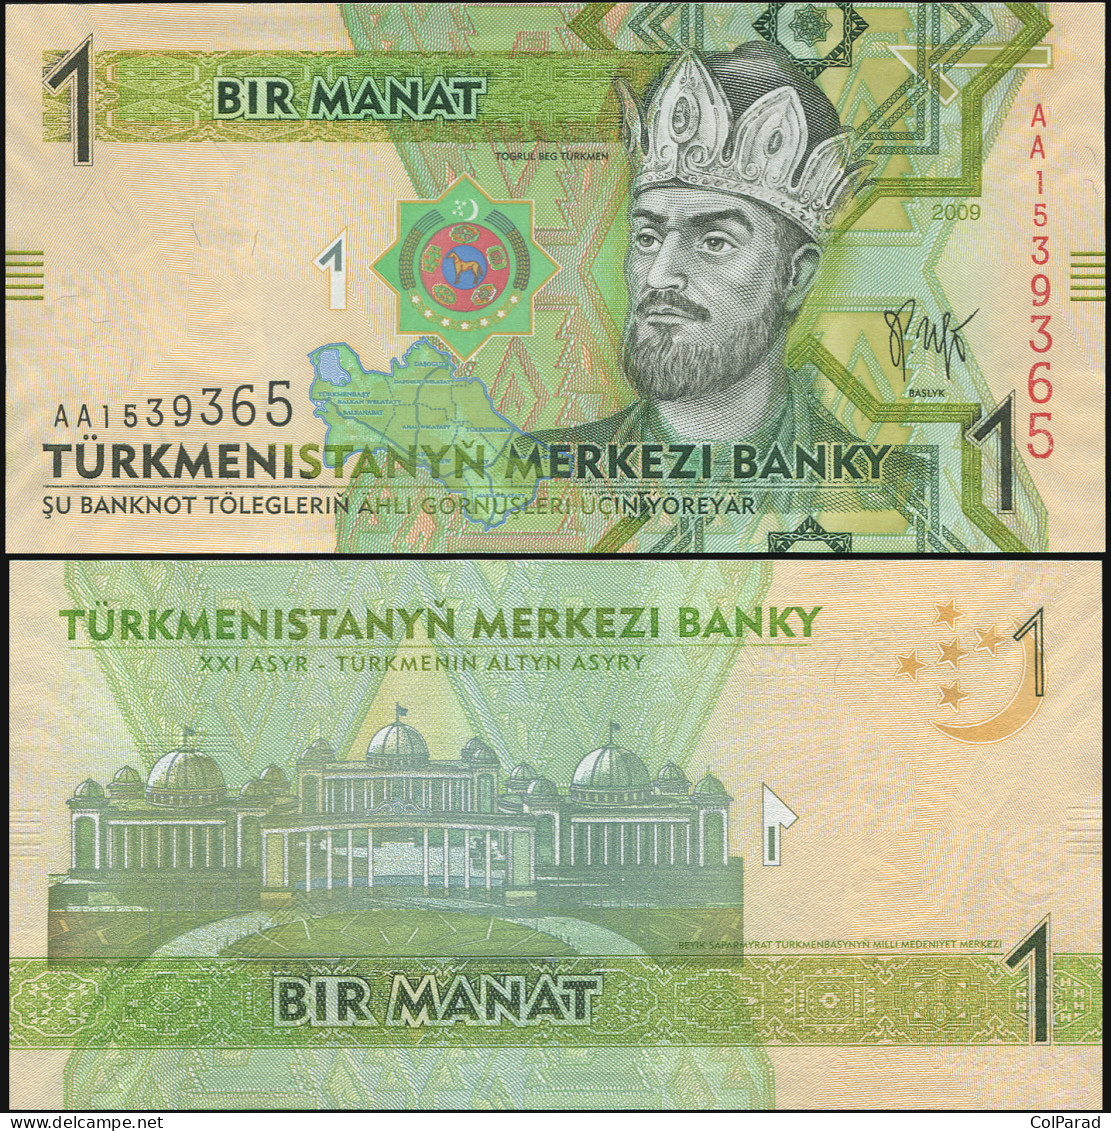 TURKMENISTAN 1 MANAT - 2009 - Unc - P.22a Paper Banknote - Turkmenistan